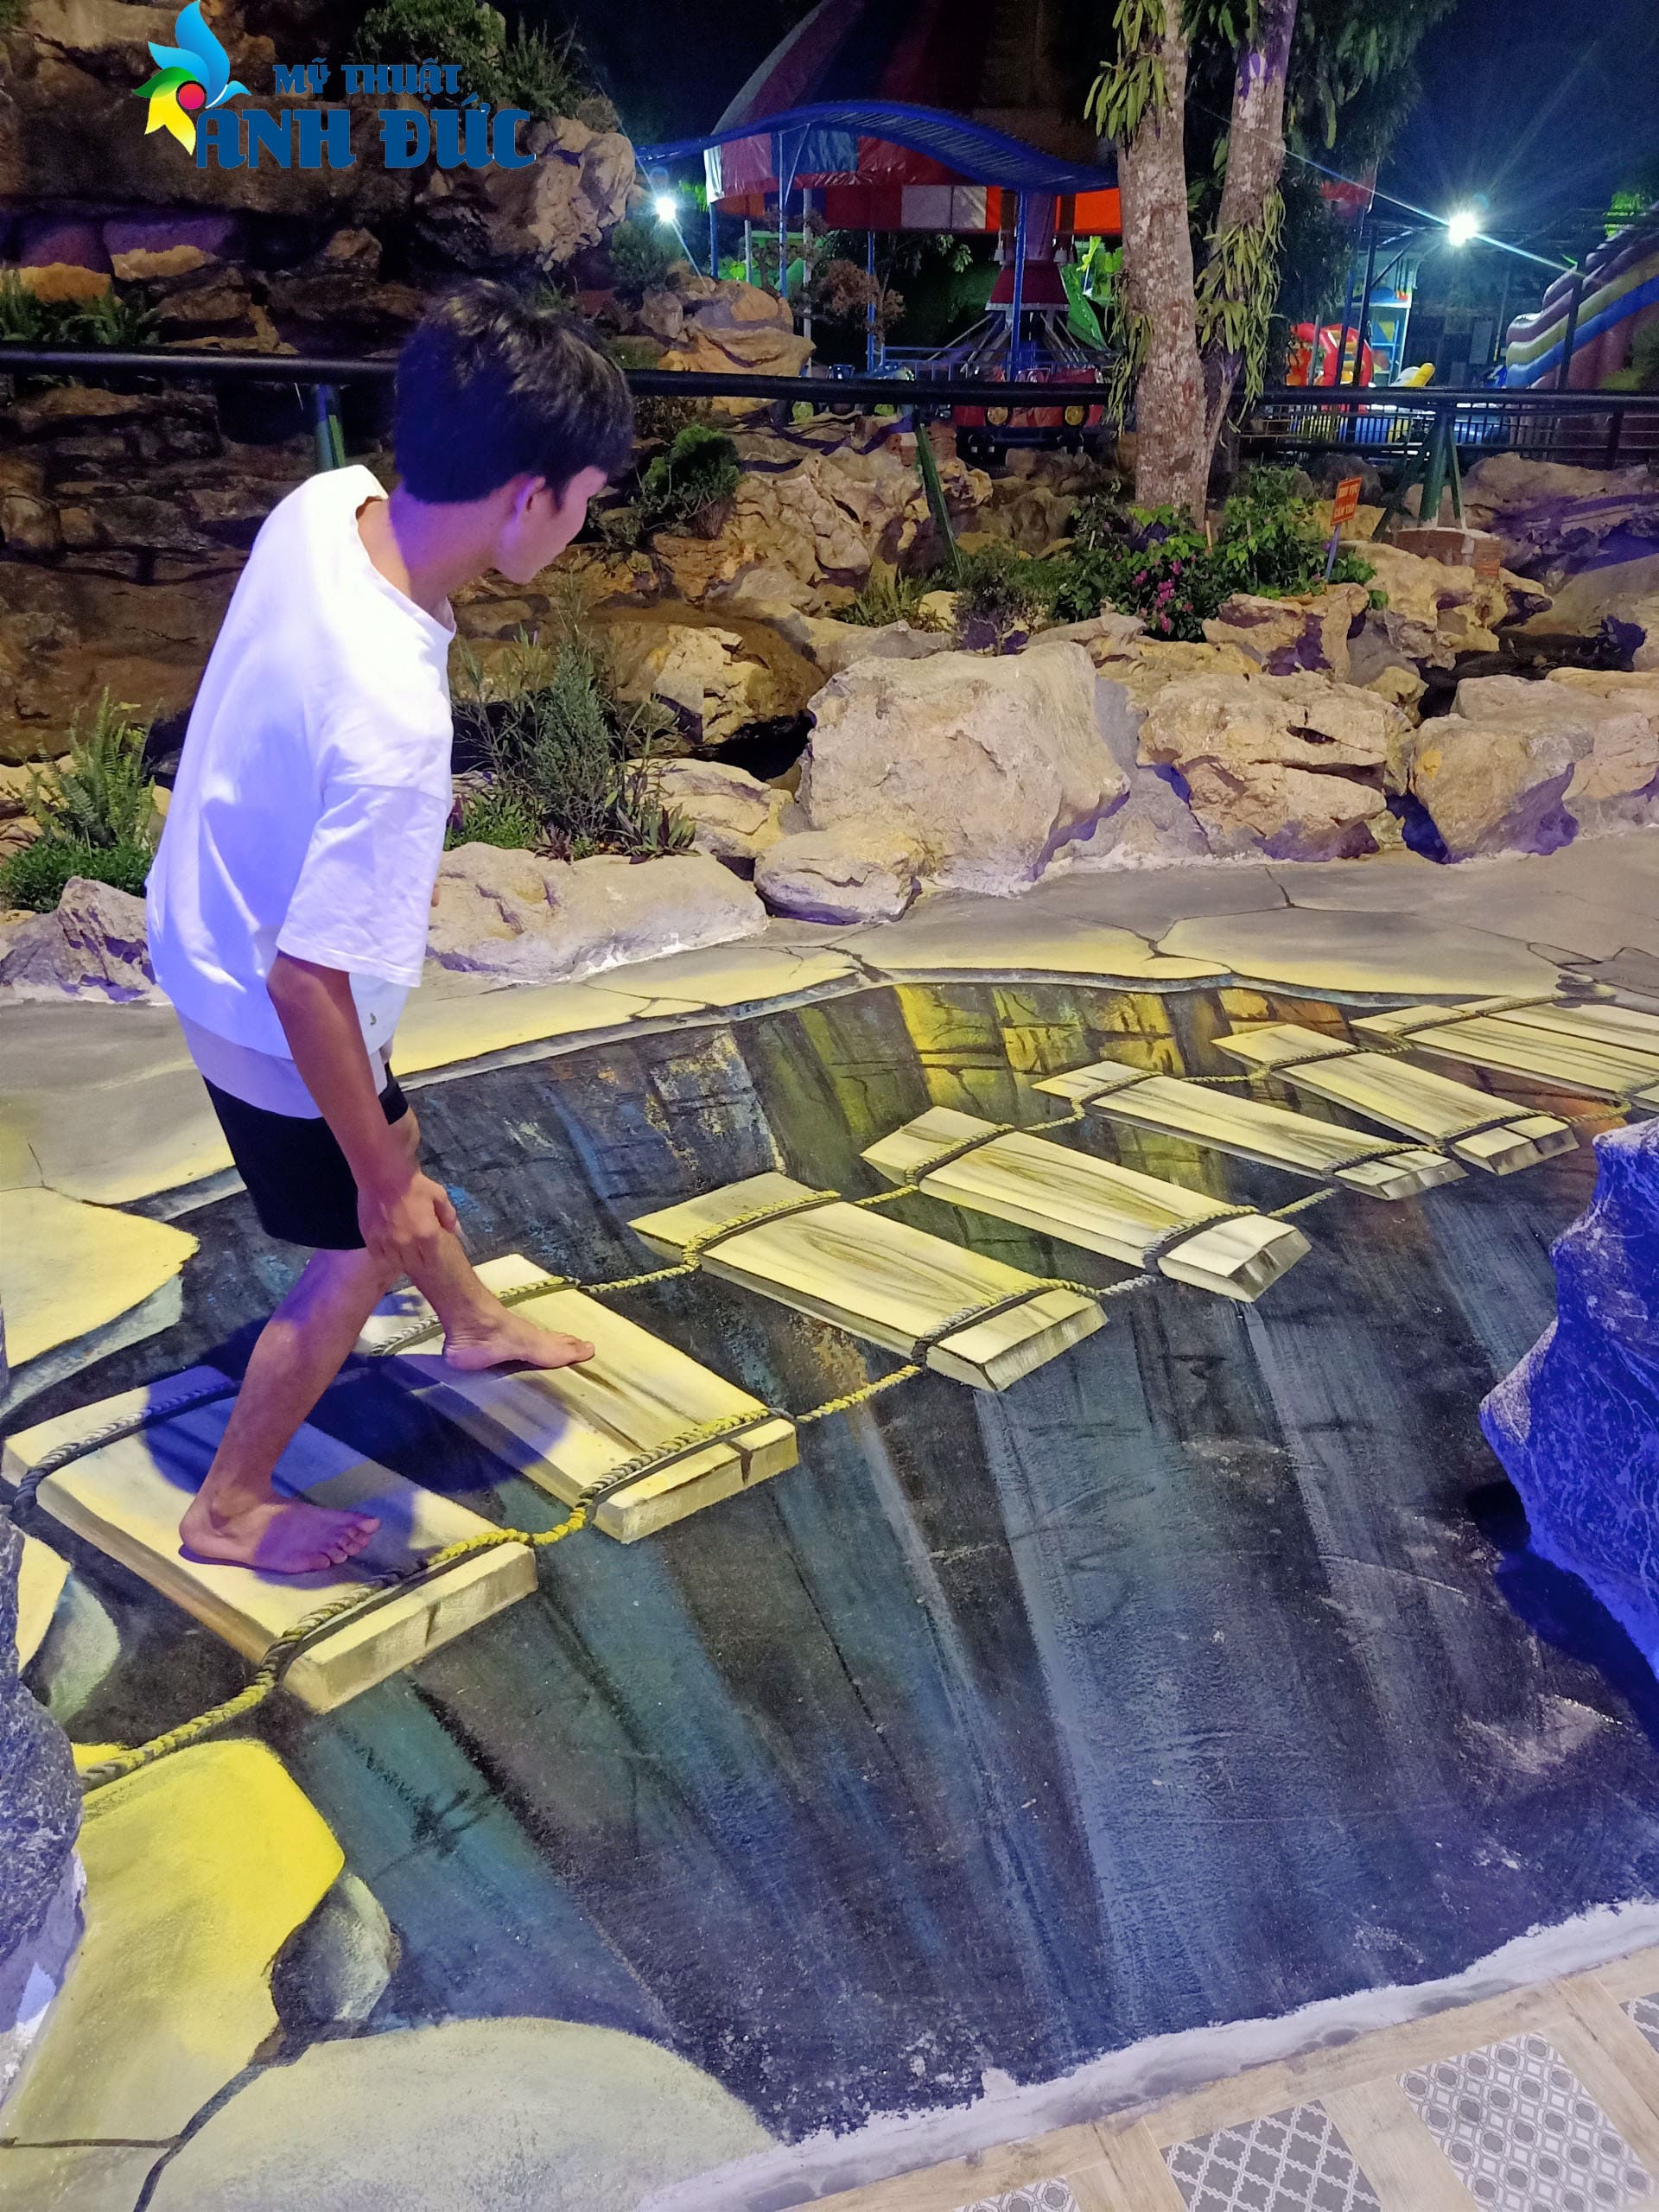 Dự án 2500m2 vẽ tranh tường 3D tại Công Viên Ngân Hà - TP Ninh Bình (Phần II)